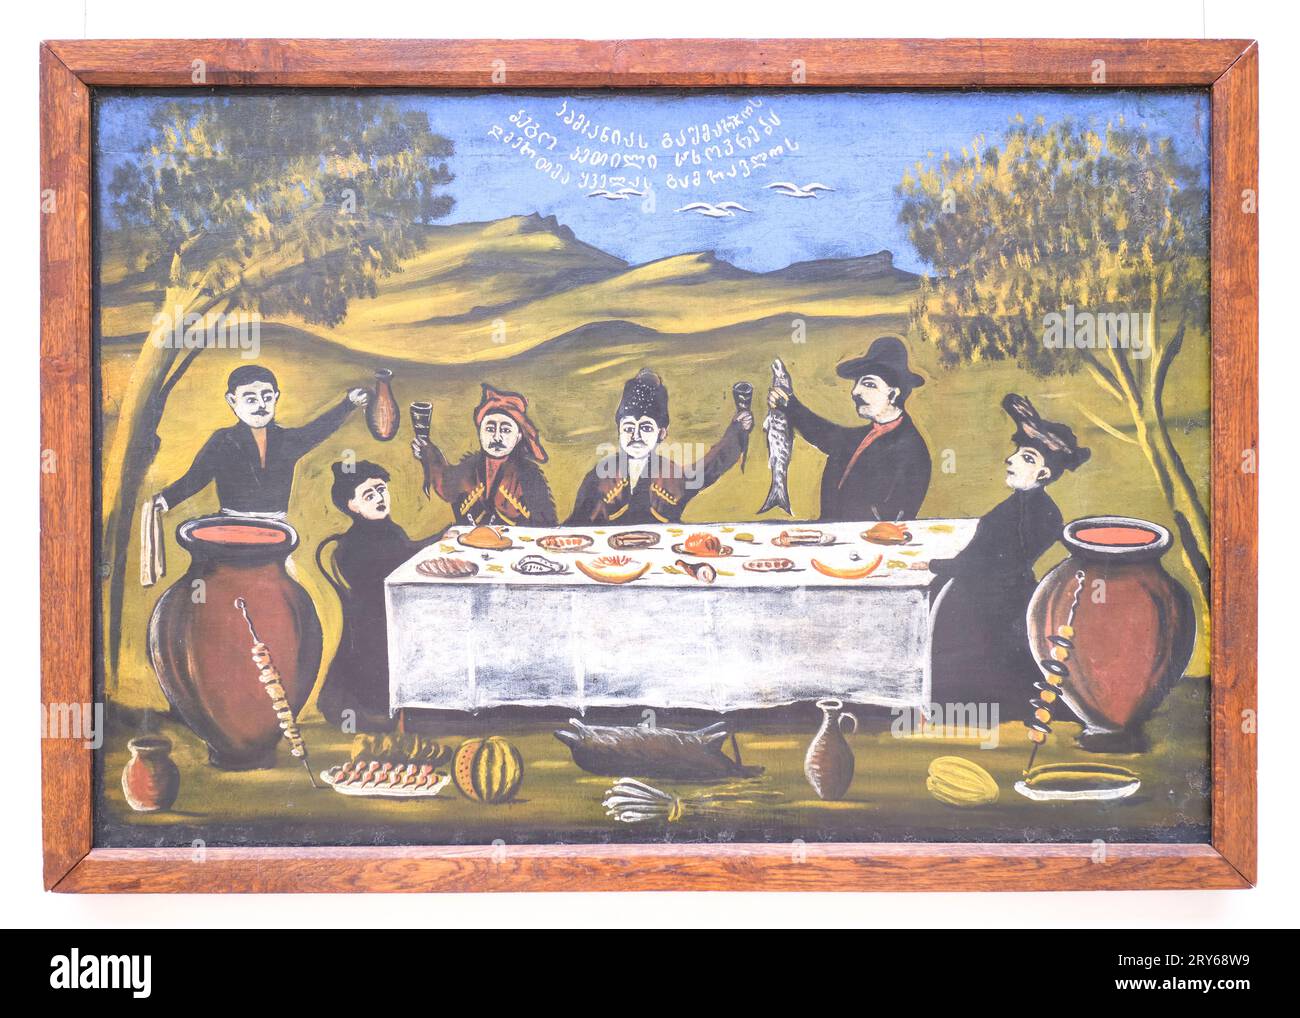 Una pintura clásica e icónica del artista, Niko Pirosmanashvili, de una celebración campestre al aire libre con pescado, jabalí, kebab, melón y bebida. En TBI Foto de stock